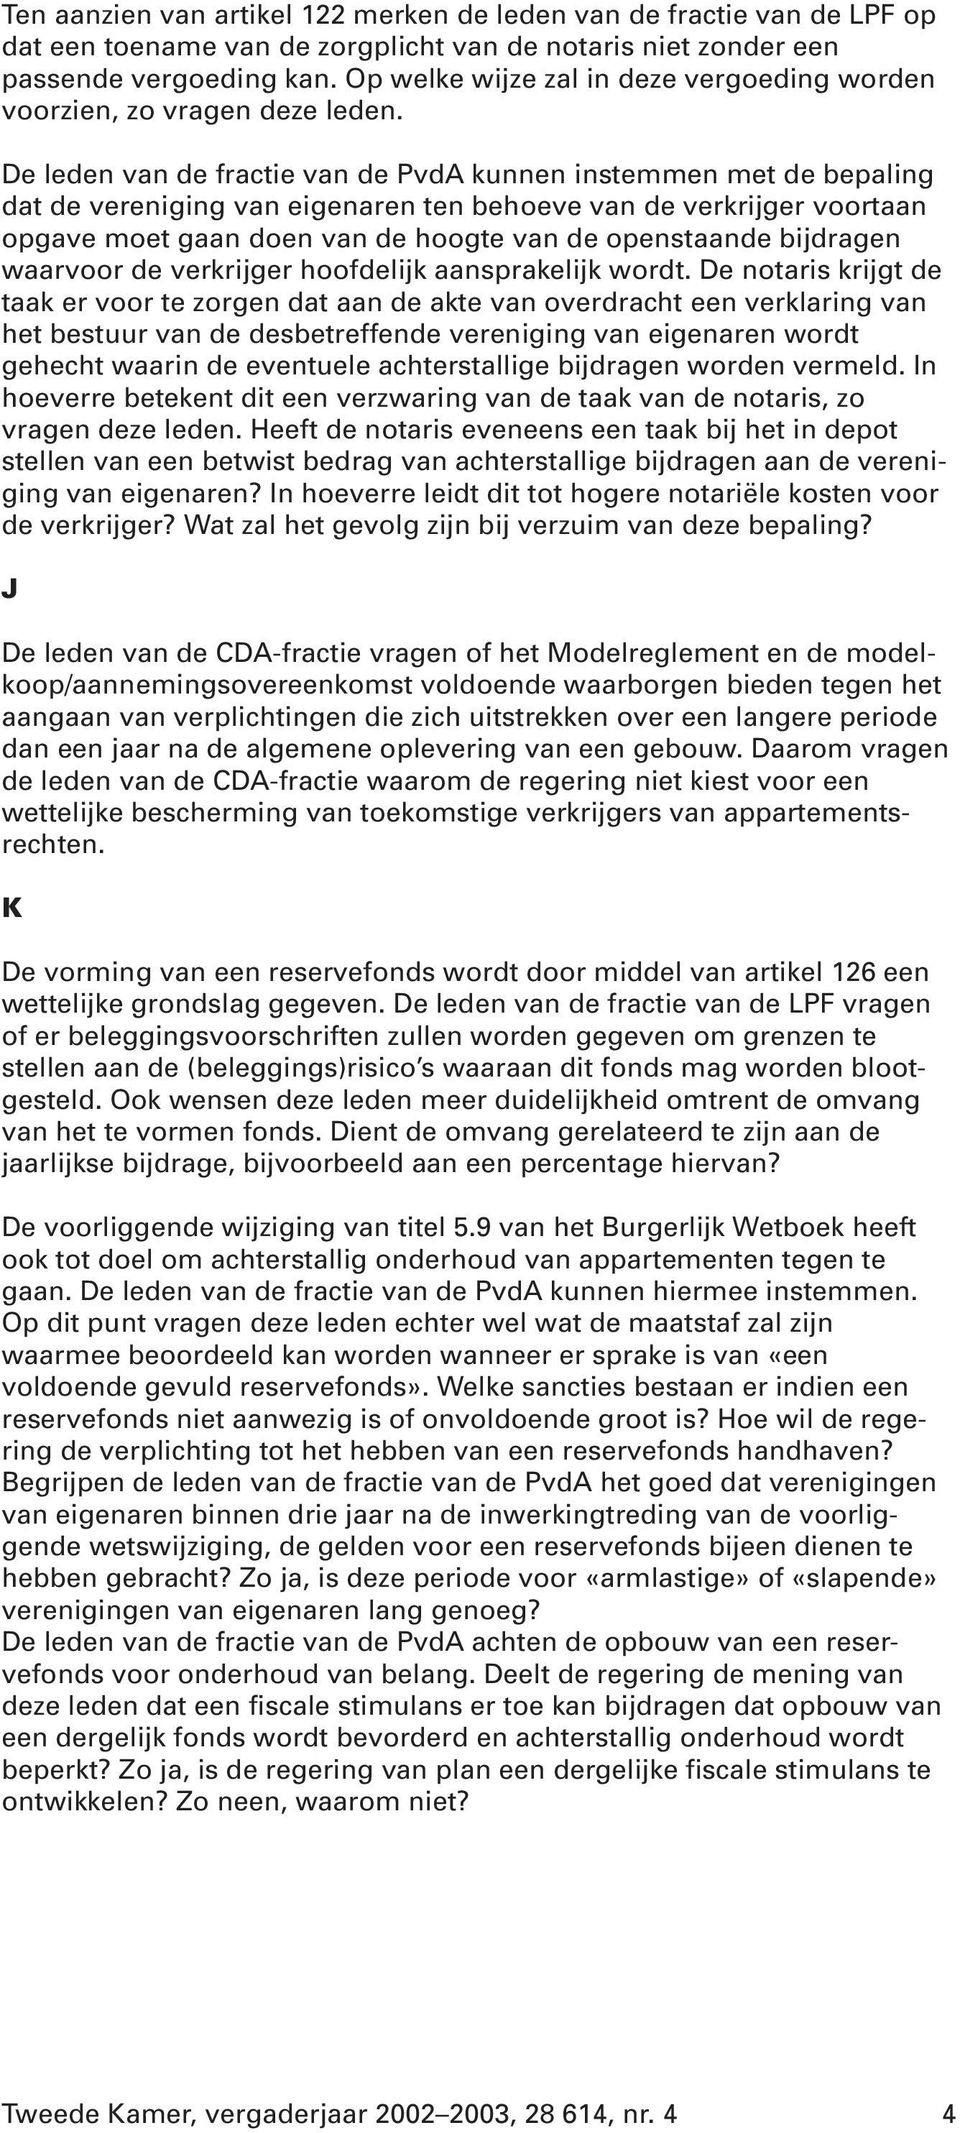 De leden van de fractie van de PvdA kunnen instemmen met de bepaling dat de vereniging van eigenaren ten behoeve van de verkrijger voortaan opgave moet gaan doen van de hoogte van de openstaande